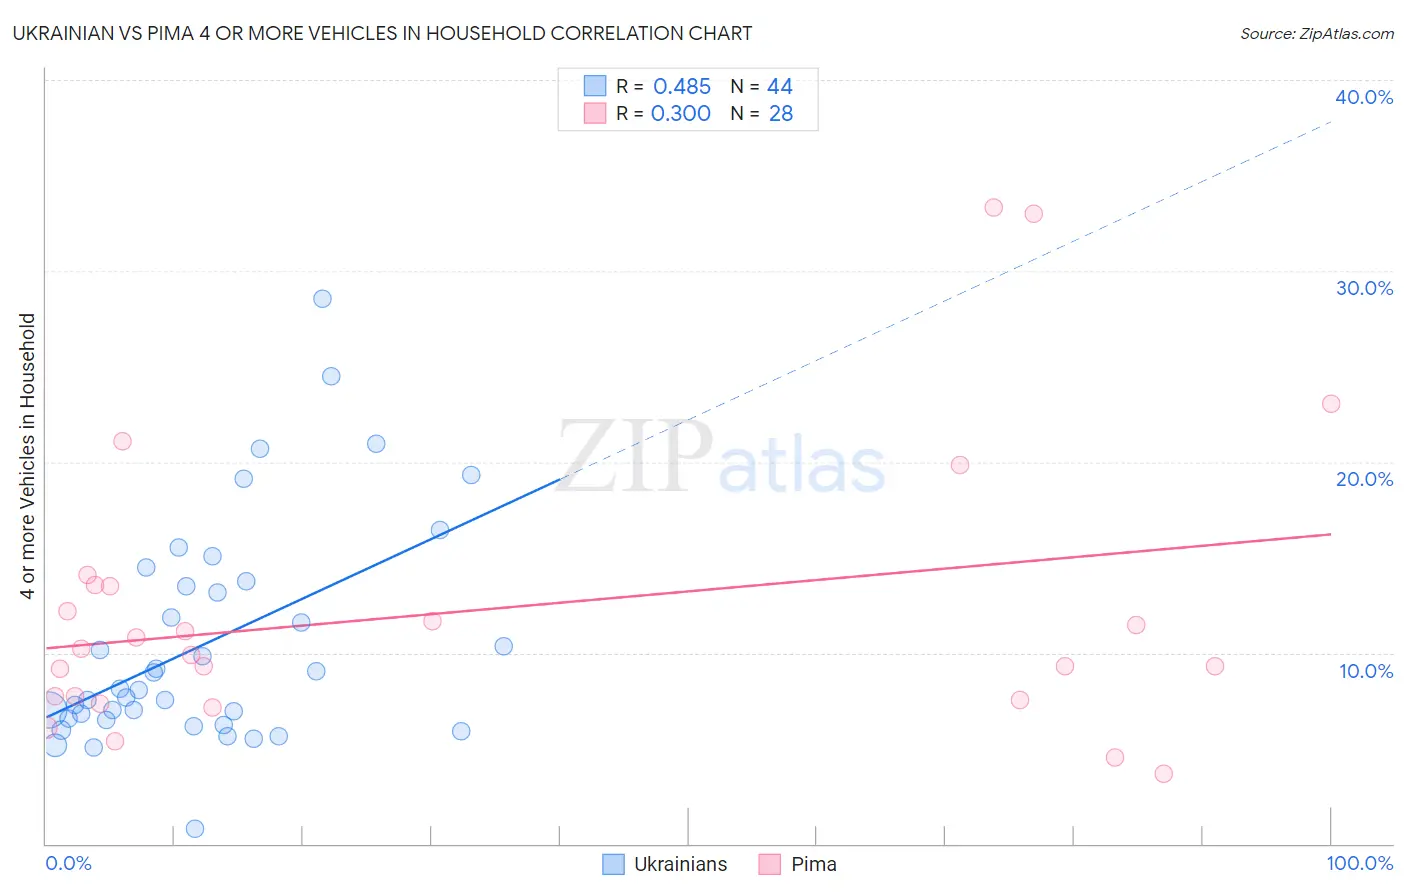 Ukrainian vs Pima 4 or more Vehicles in Household